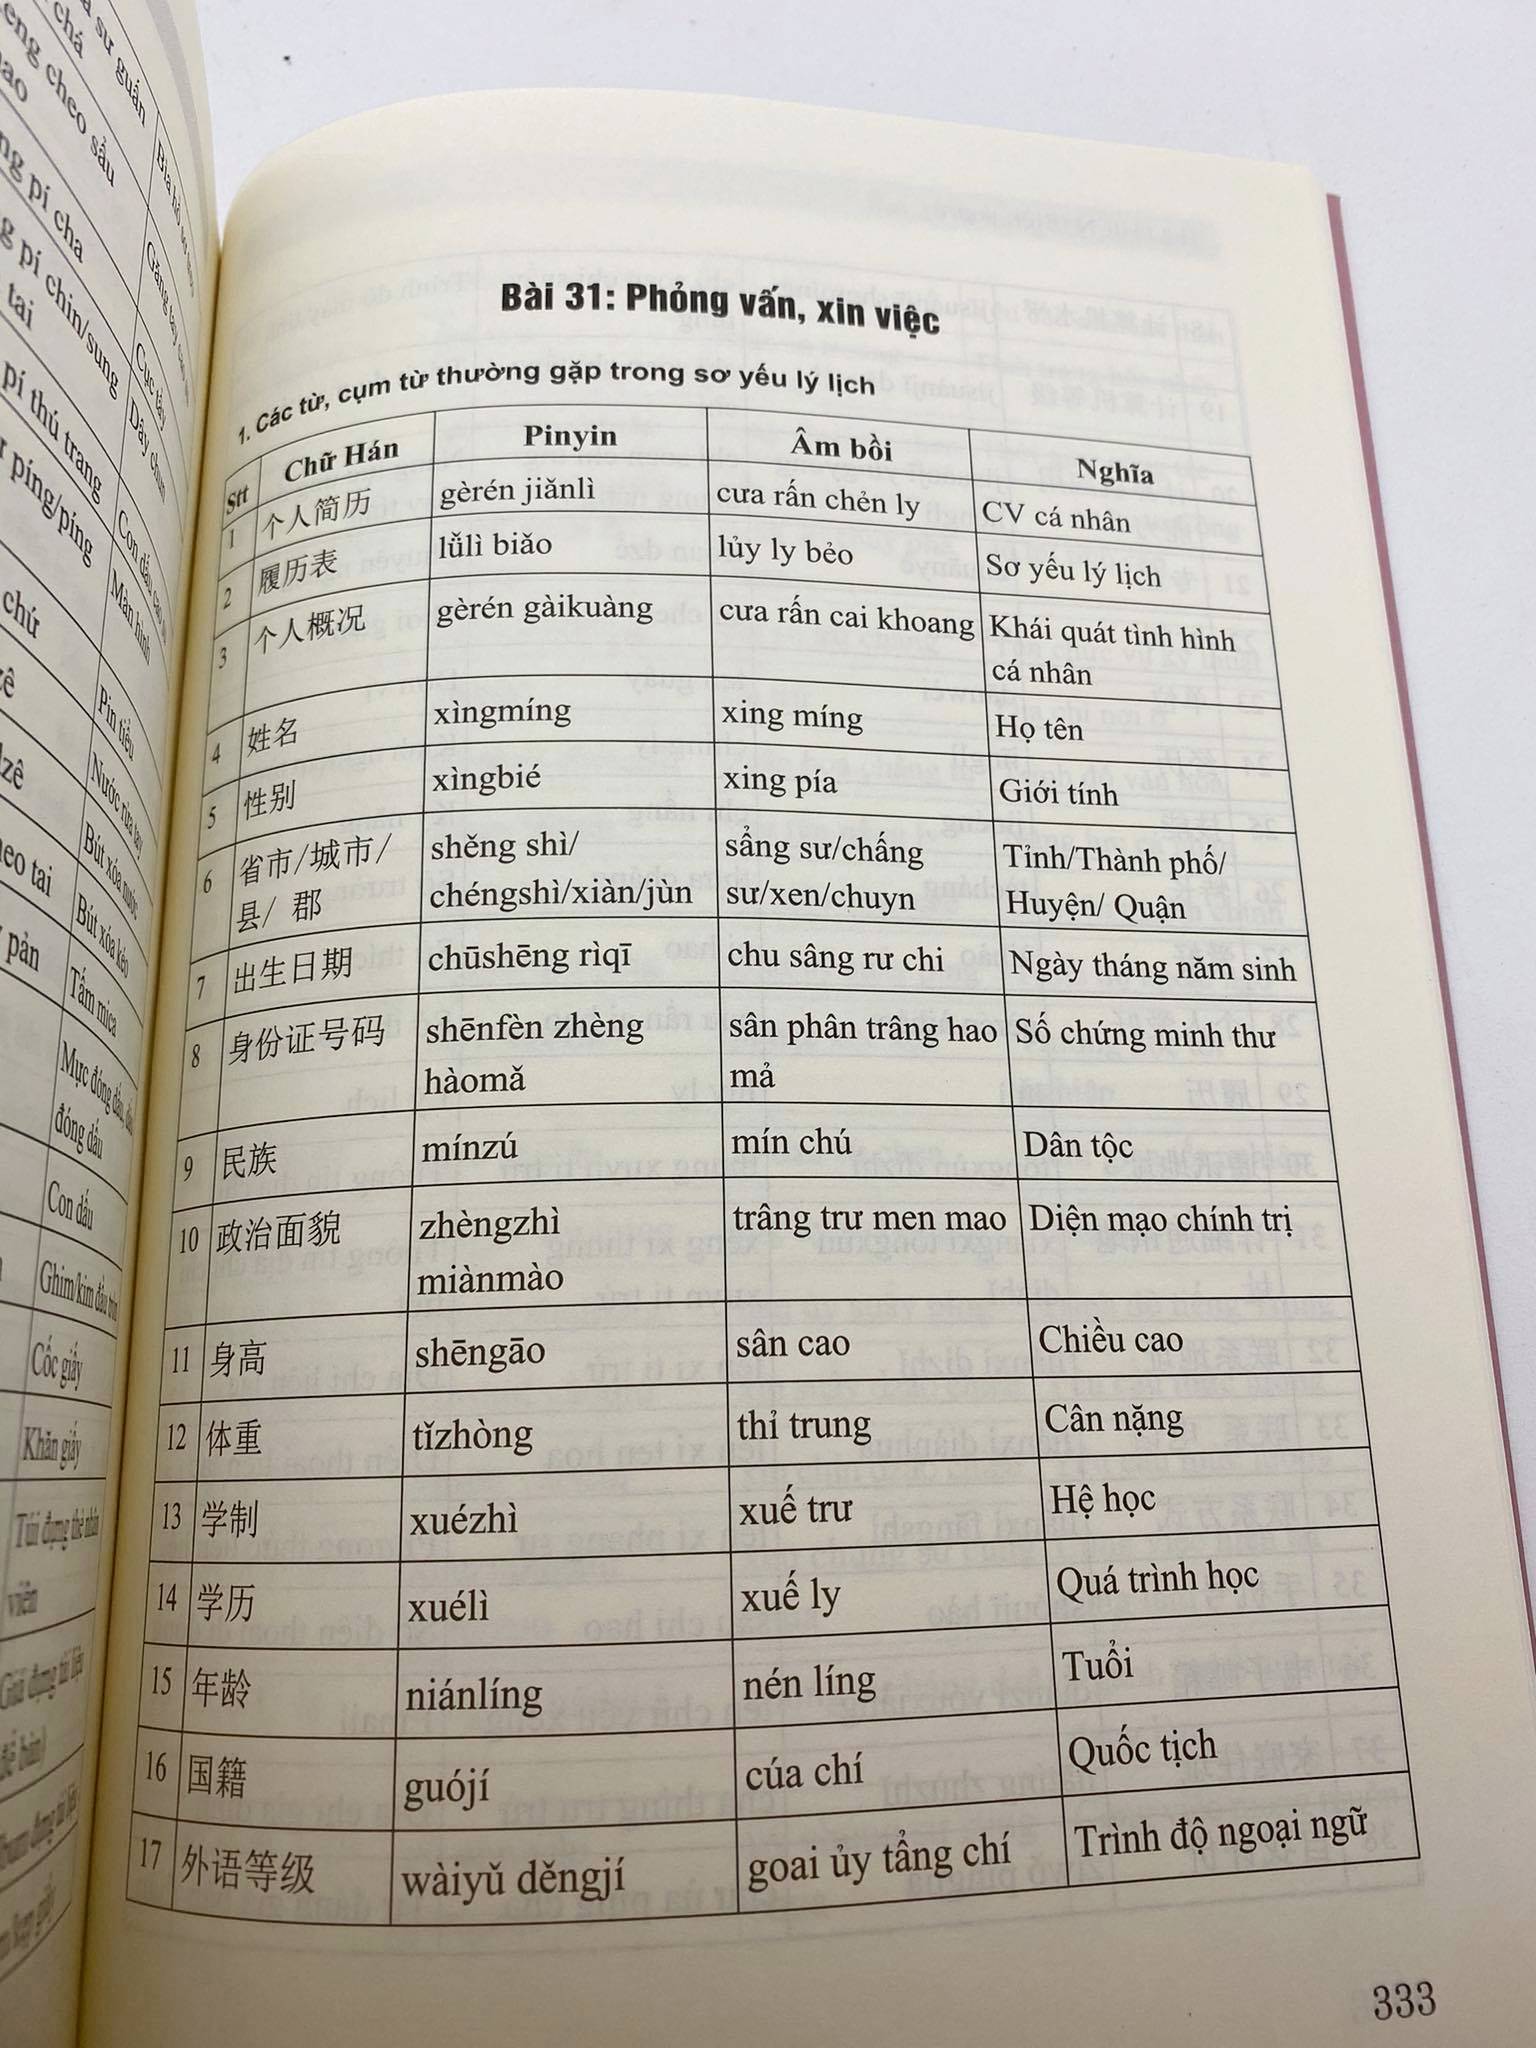 Sách- Combo 2 sách tự học tiếng trung giao tiếp từ con số 0 tập 2 và Tự học tiếng Trung văn phòng công xưởng ngành may mặc, giày da, gổ, kế toán, xuất nhập khẩu, điện tử,... có pinyin,âm bồi, mp3 nghe+DVD tài liệu